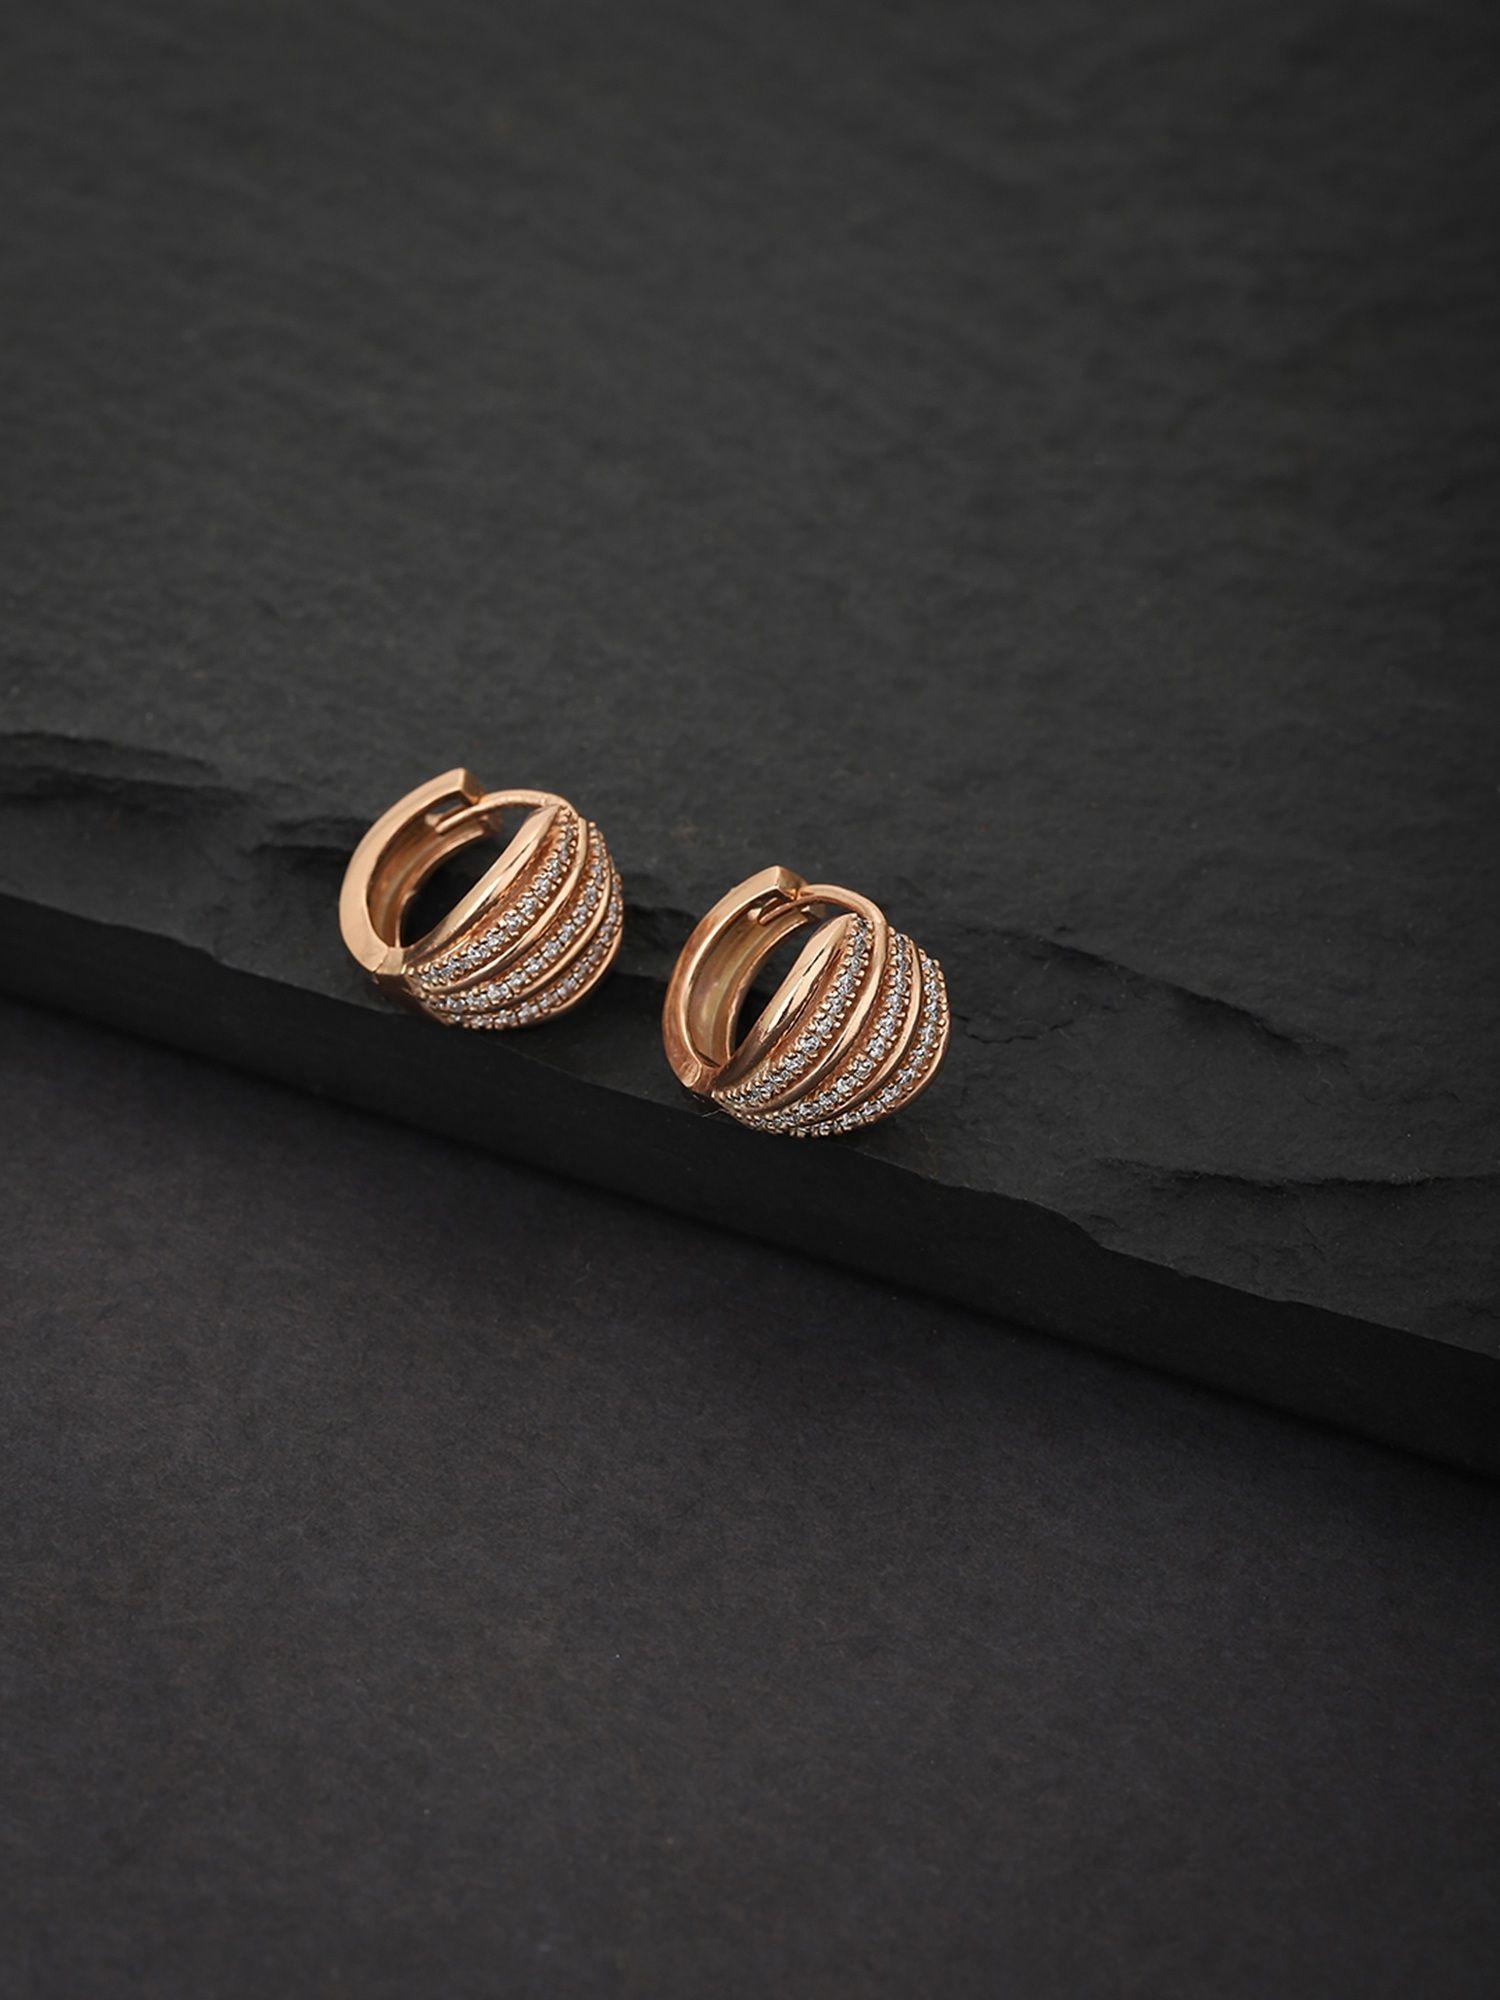 rose gold circular hoop earrings